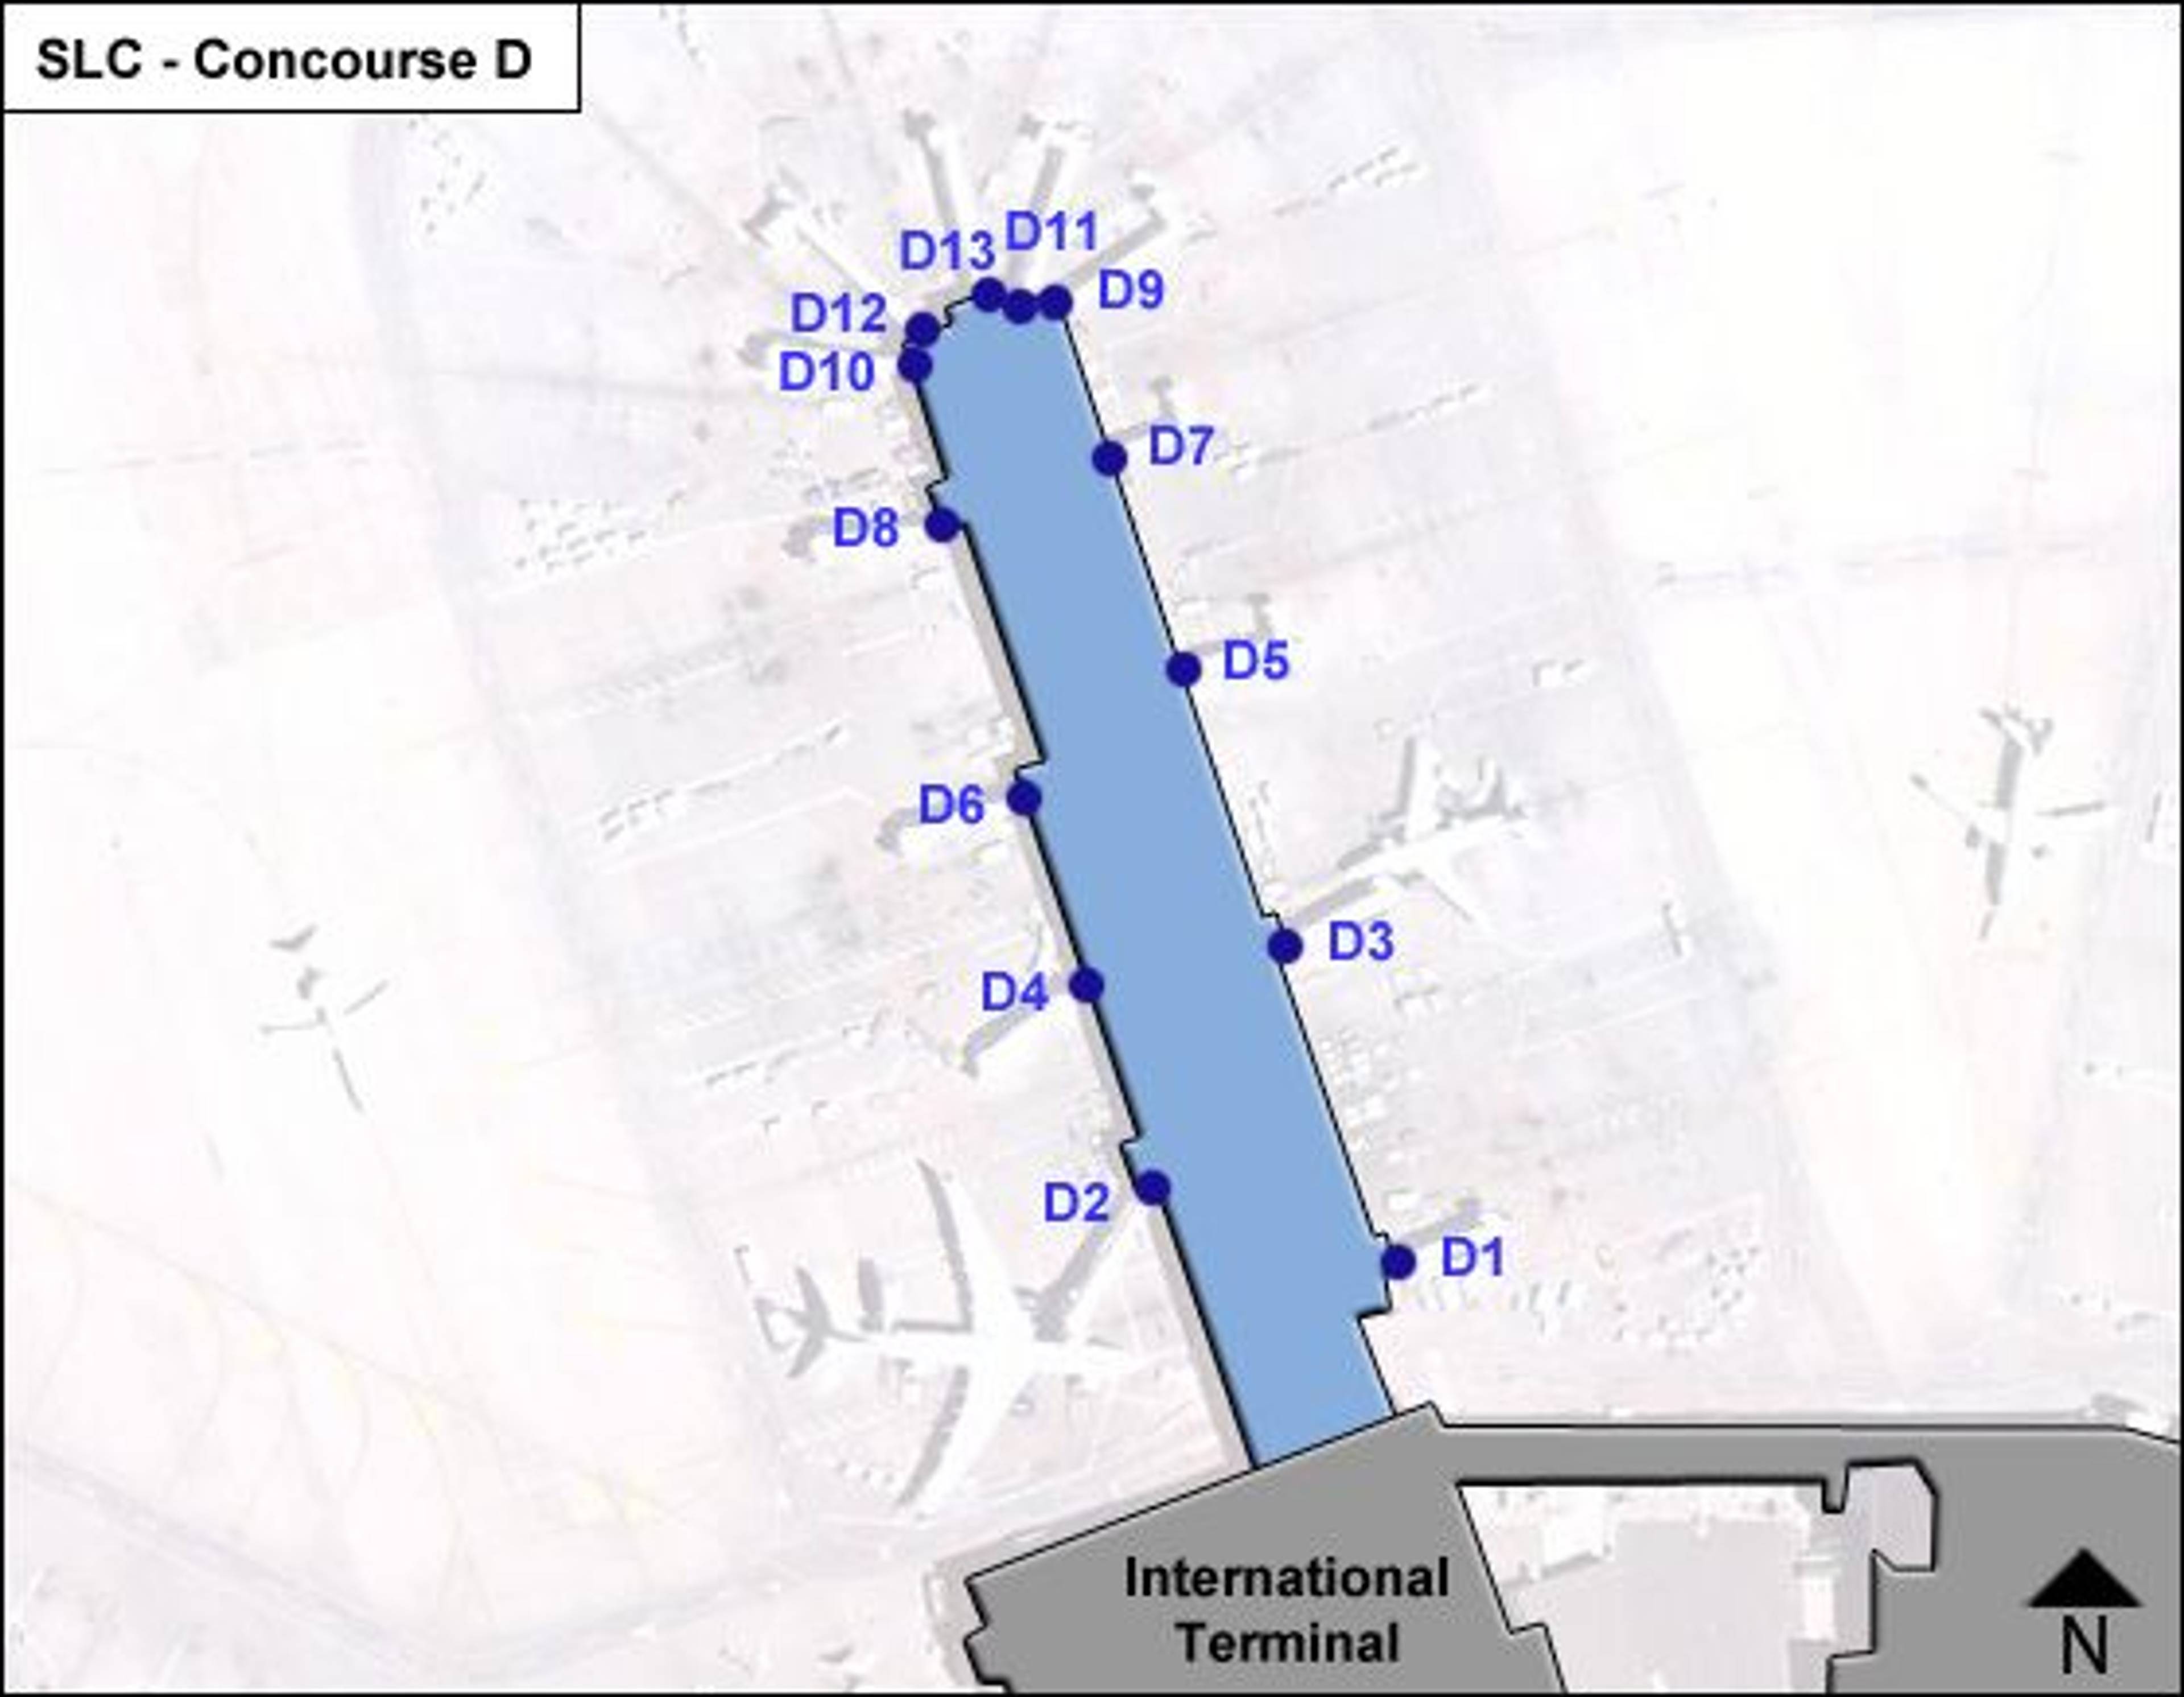 Salt Lake City Airport Concourse D Map